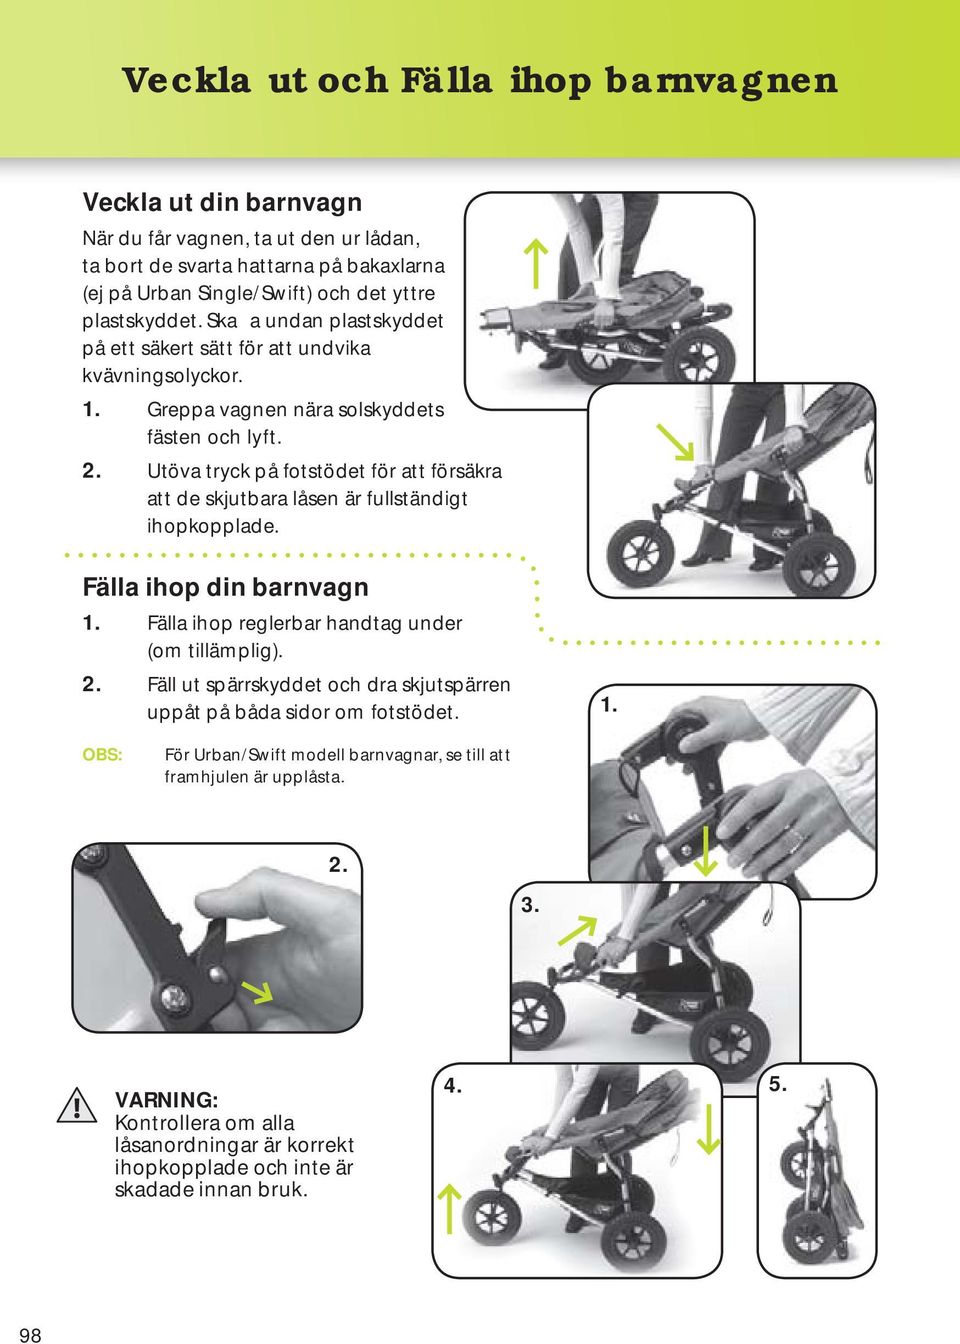 Utöva tryck på fotstödet för att försäkra att de skjutbara låsen är fullständigt ihopkopplade. Fälla ihop din barnvagn 1. Fälla ihop reglerbar handtag under (om tillämplig). 2.